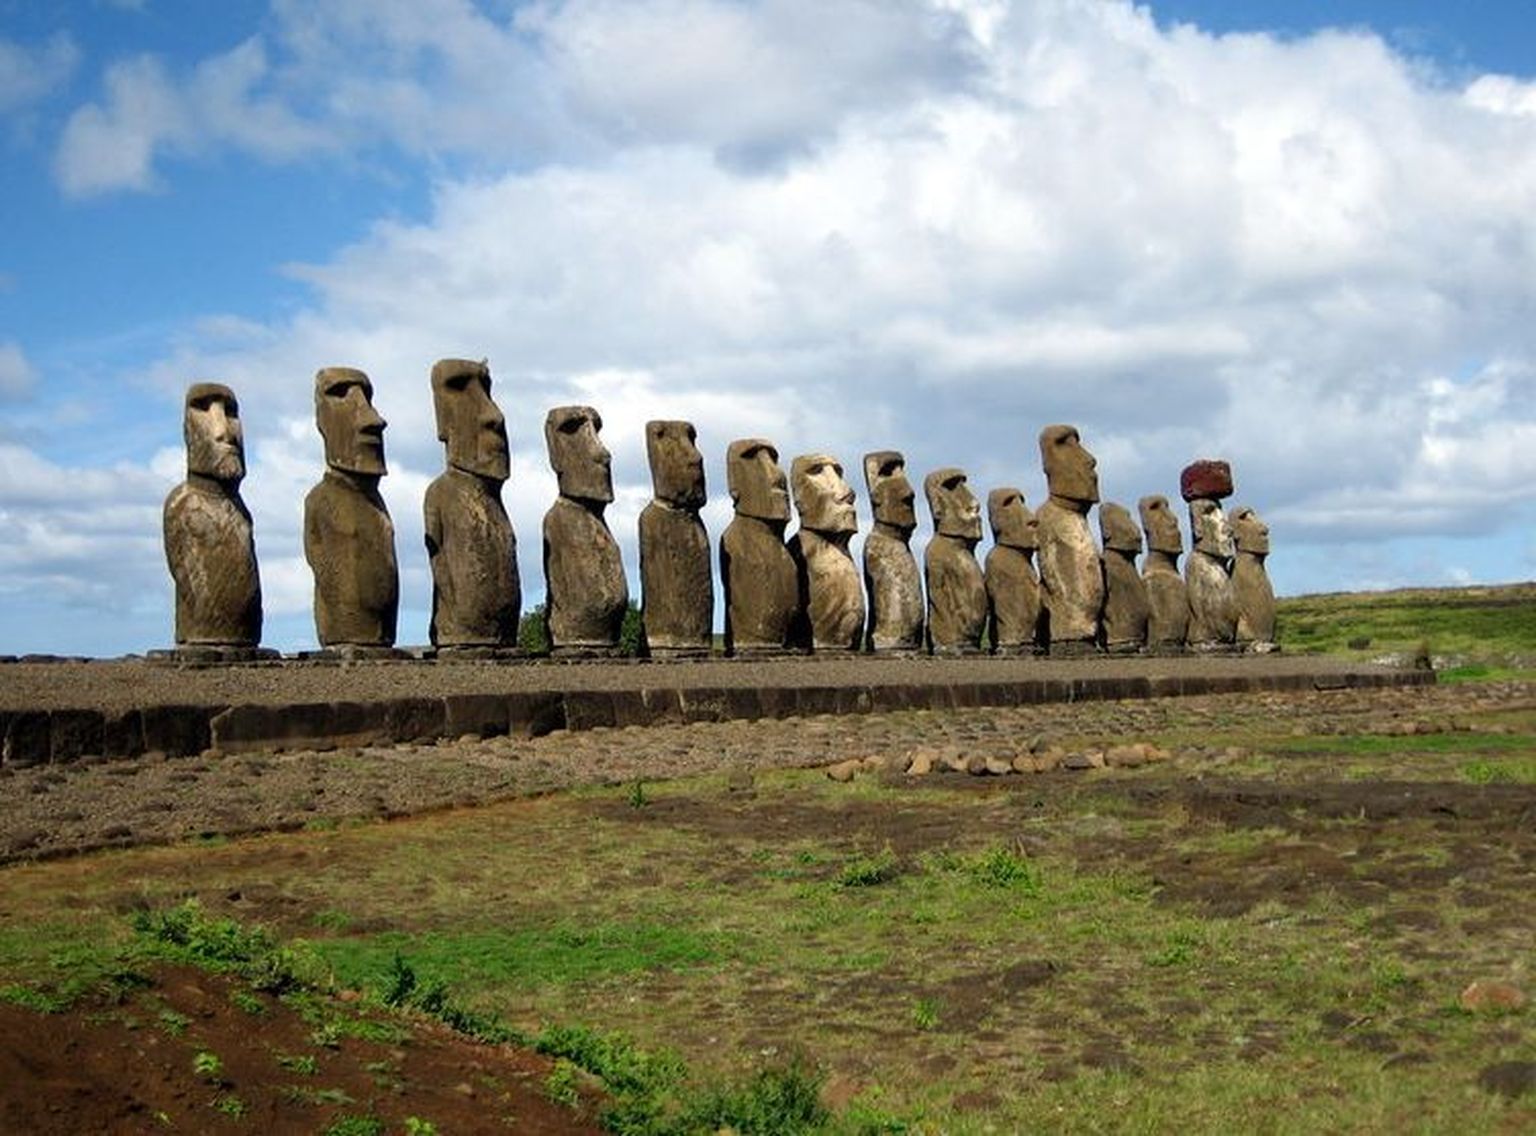 Lihavõttesaare rapamütsiin aitab eluiga pikendada? Fotol kuulsaid moai kujud